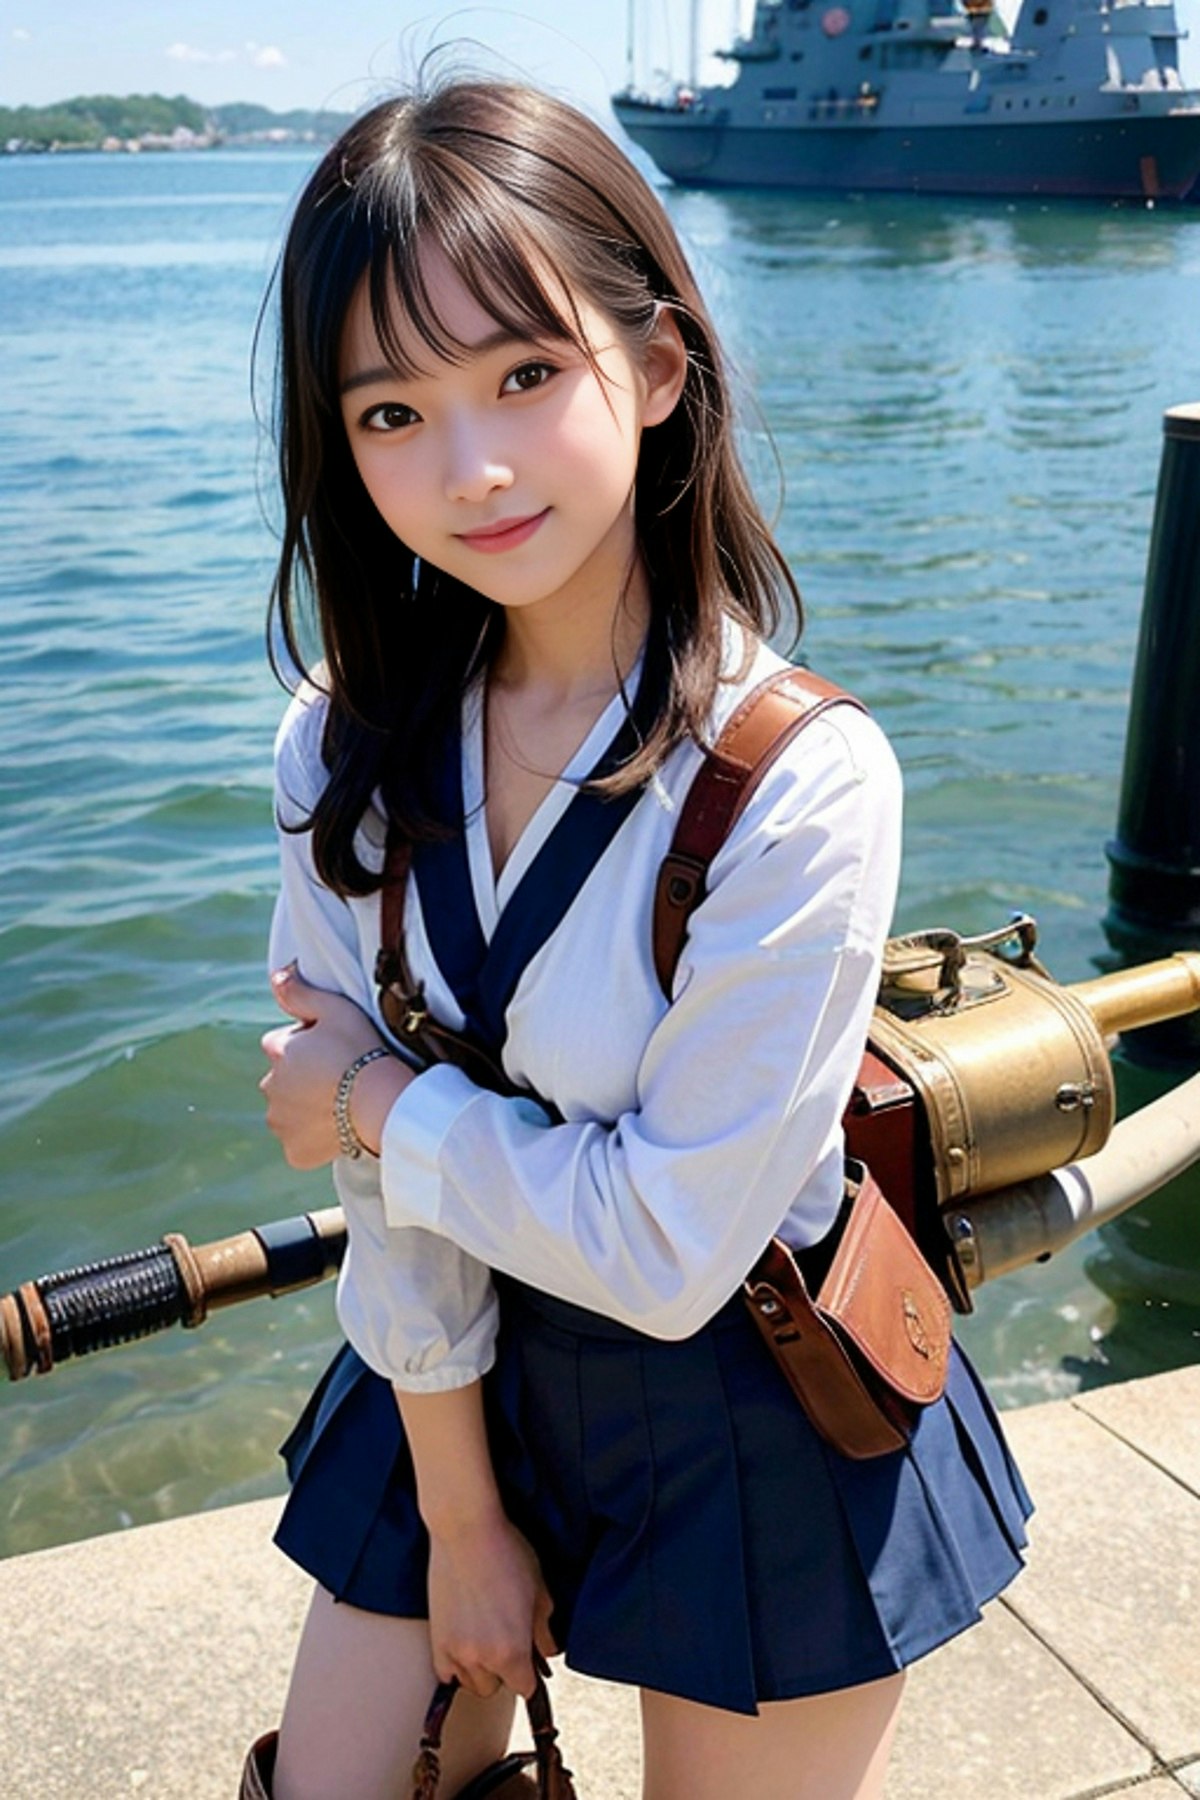 英愛女子学園 海上保安部 Chichi Pui（ちちぷい）aiイラスト専用の投稿サイト